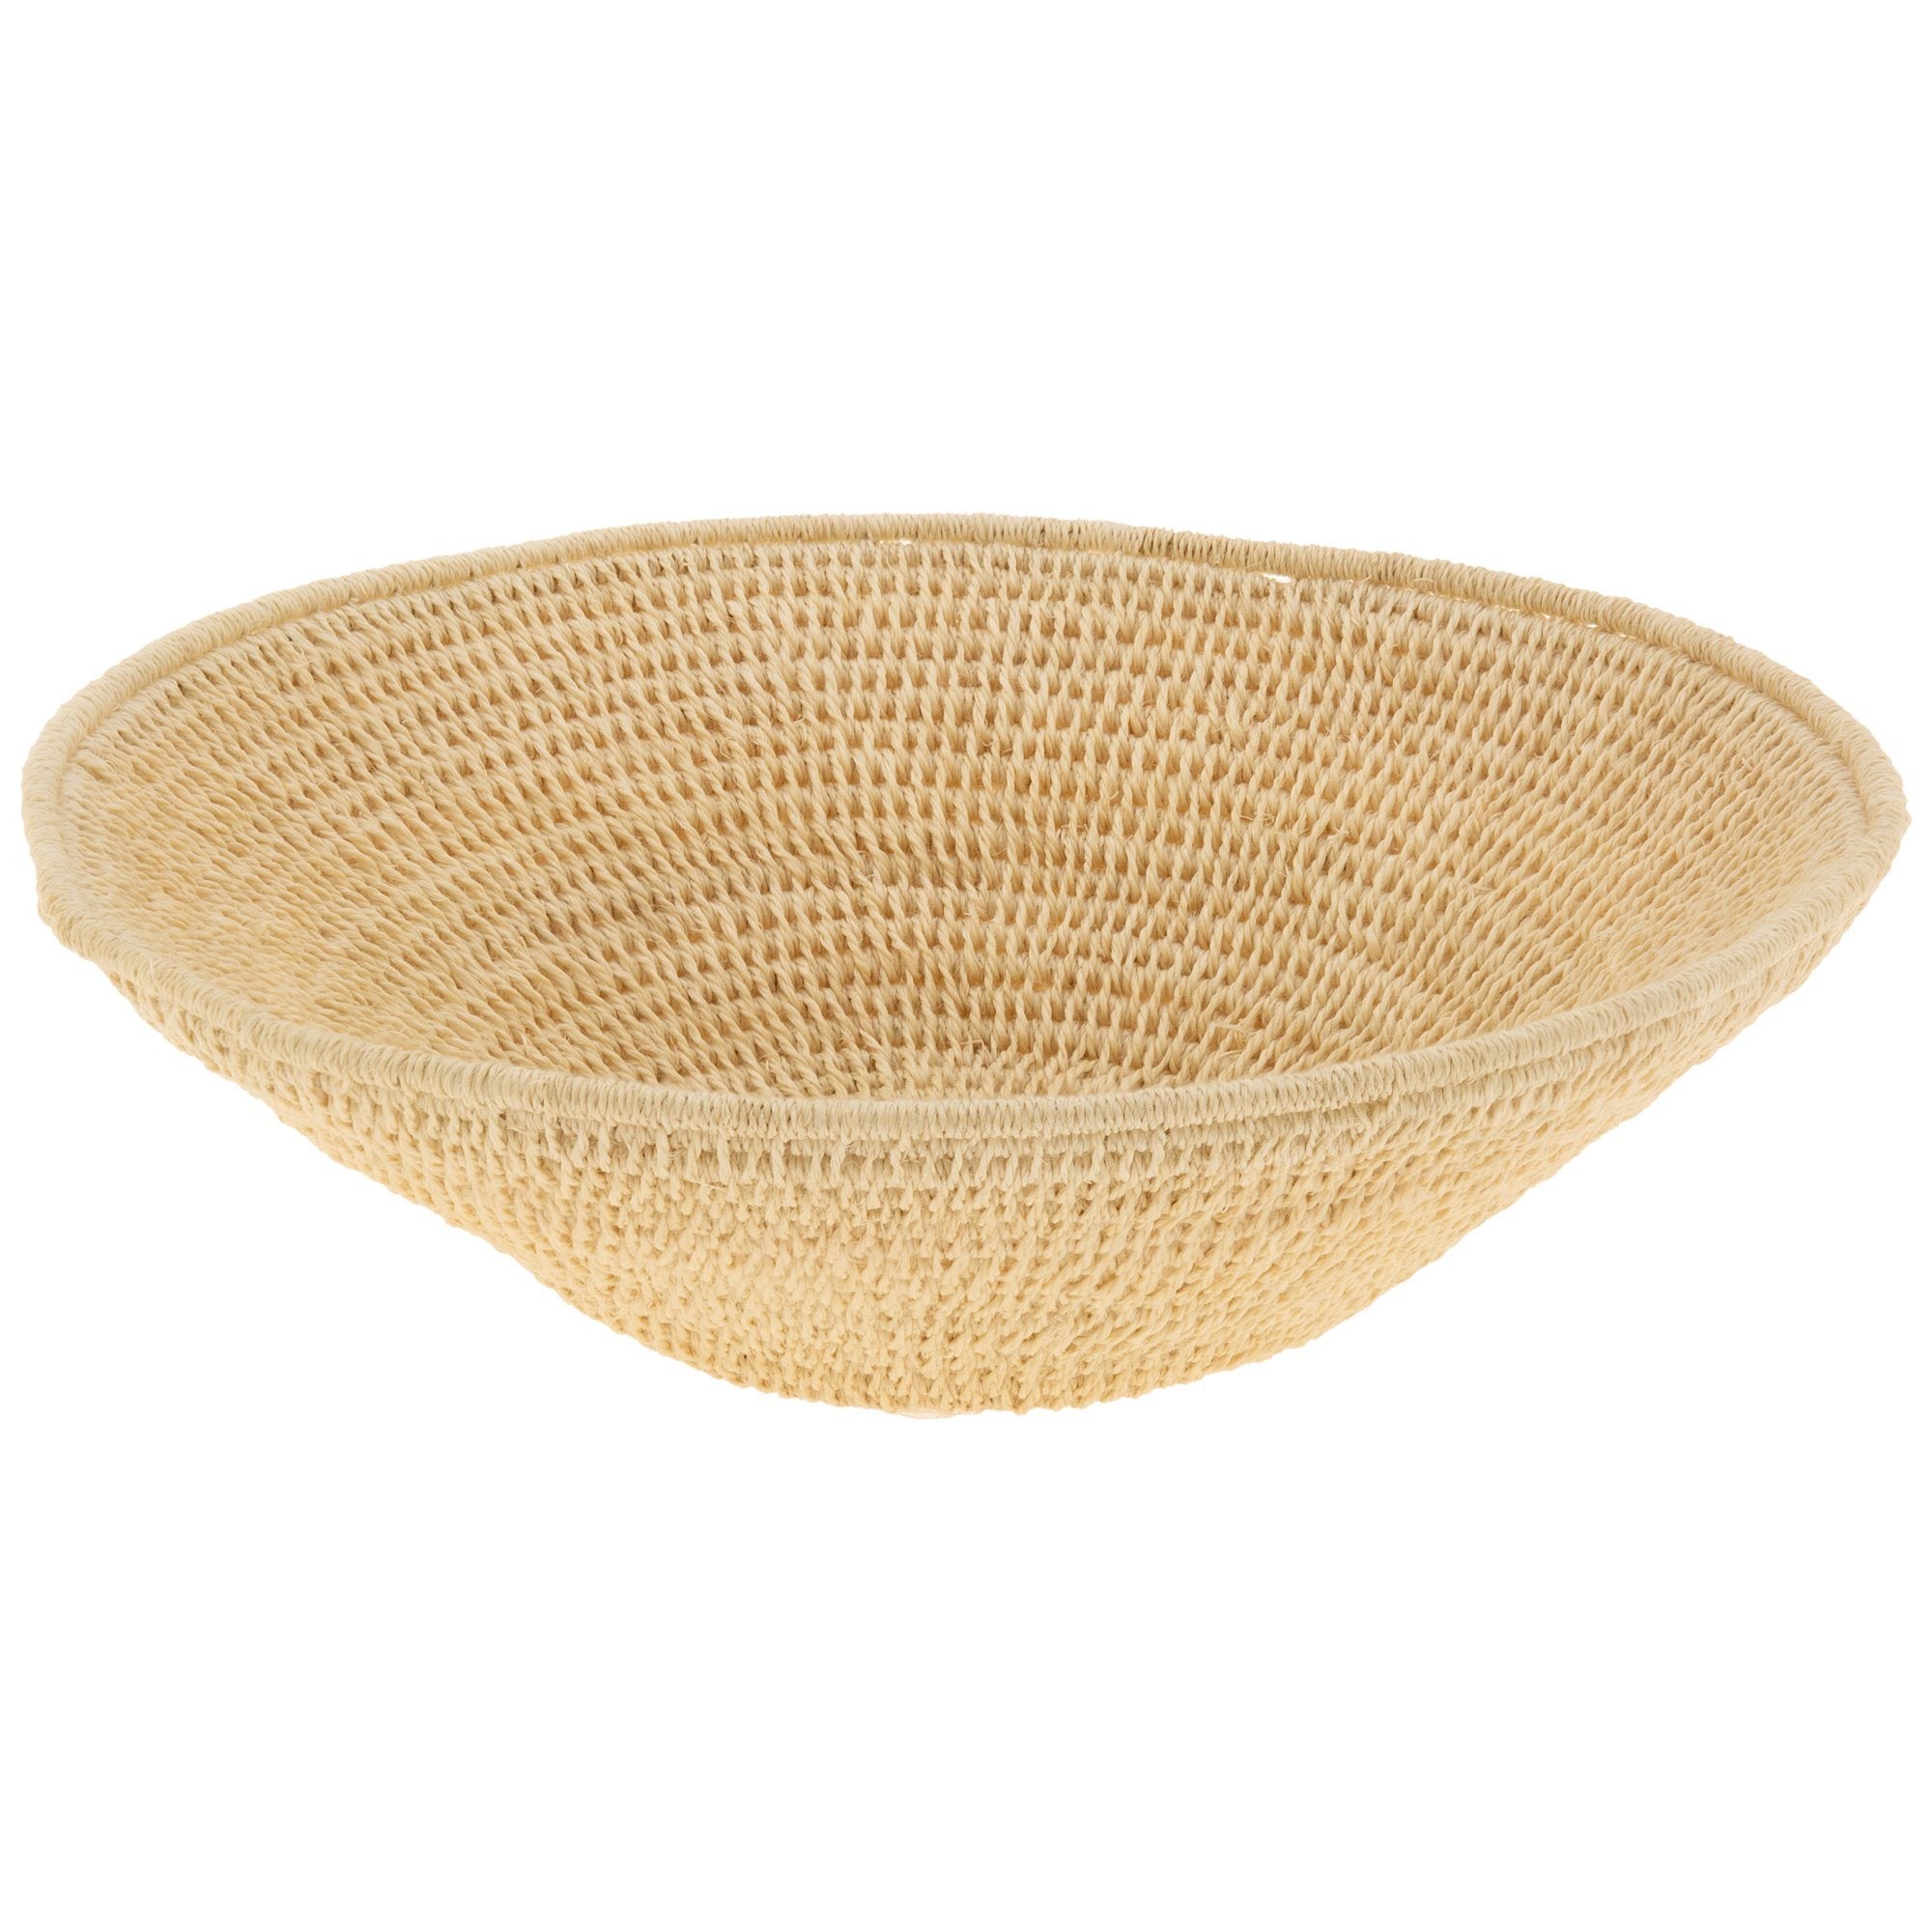 Handwoven Sisal Petite Basket - Natural